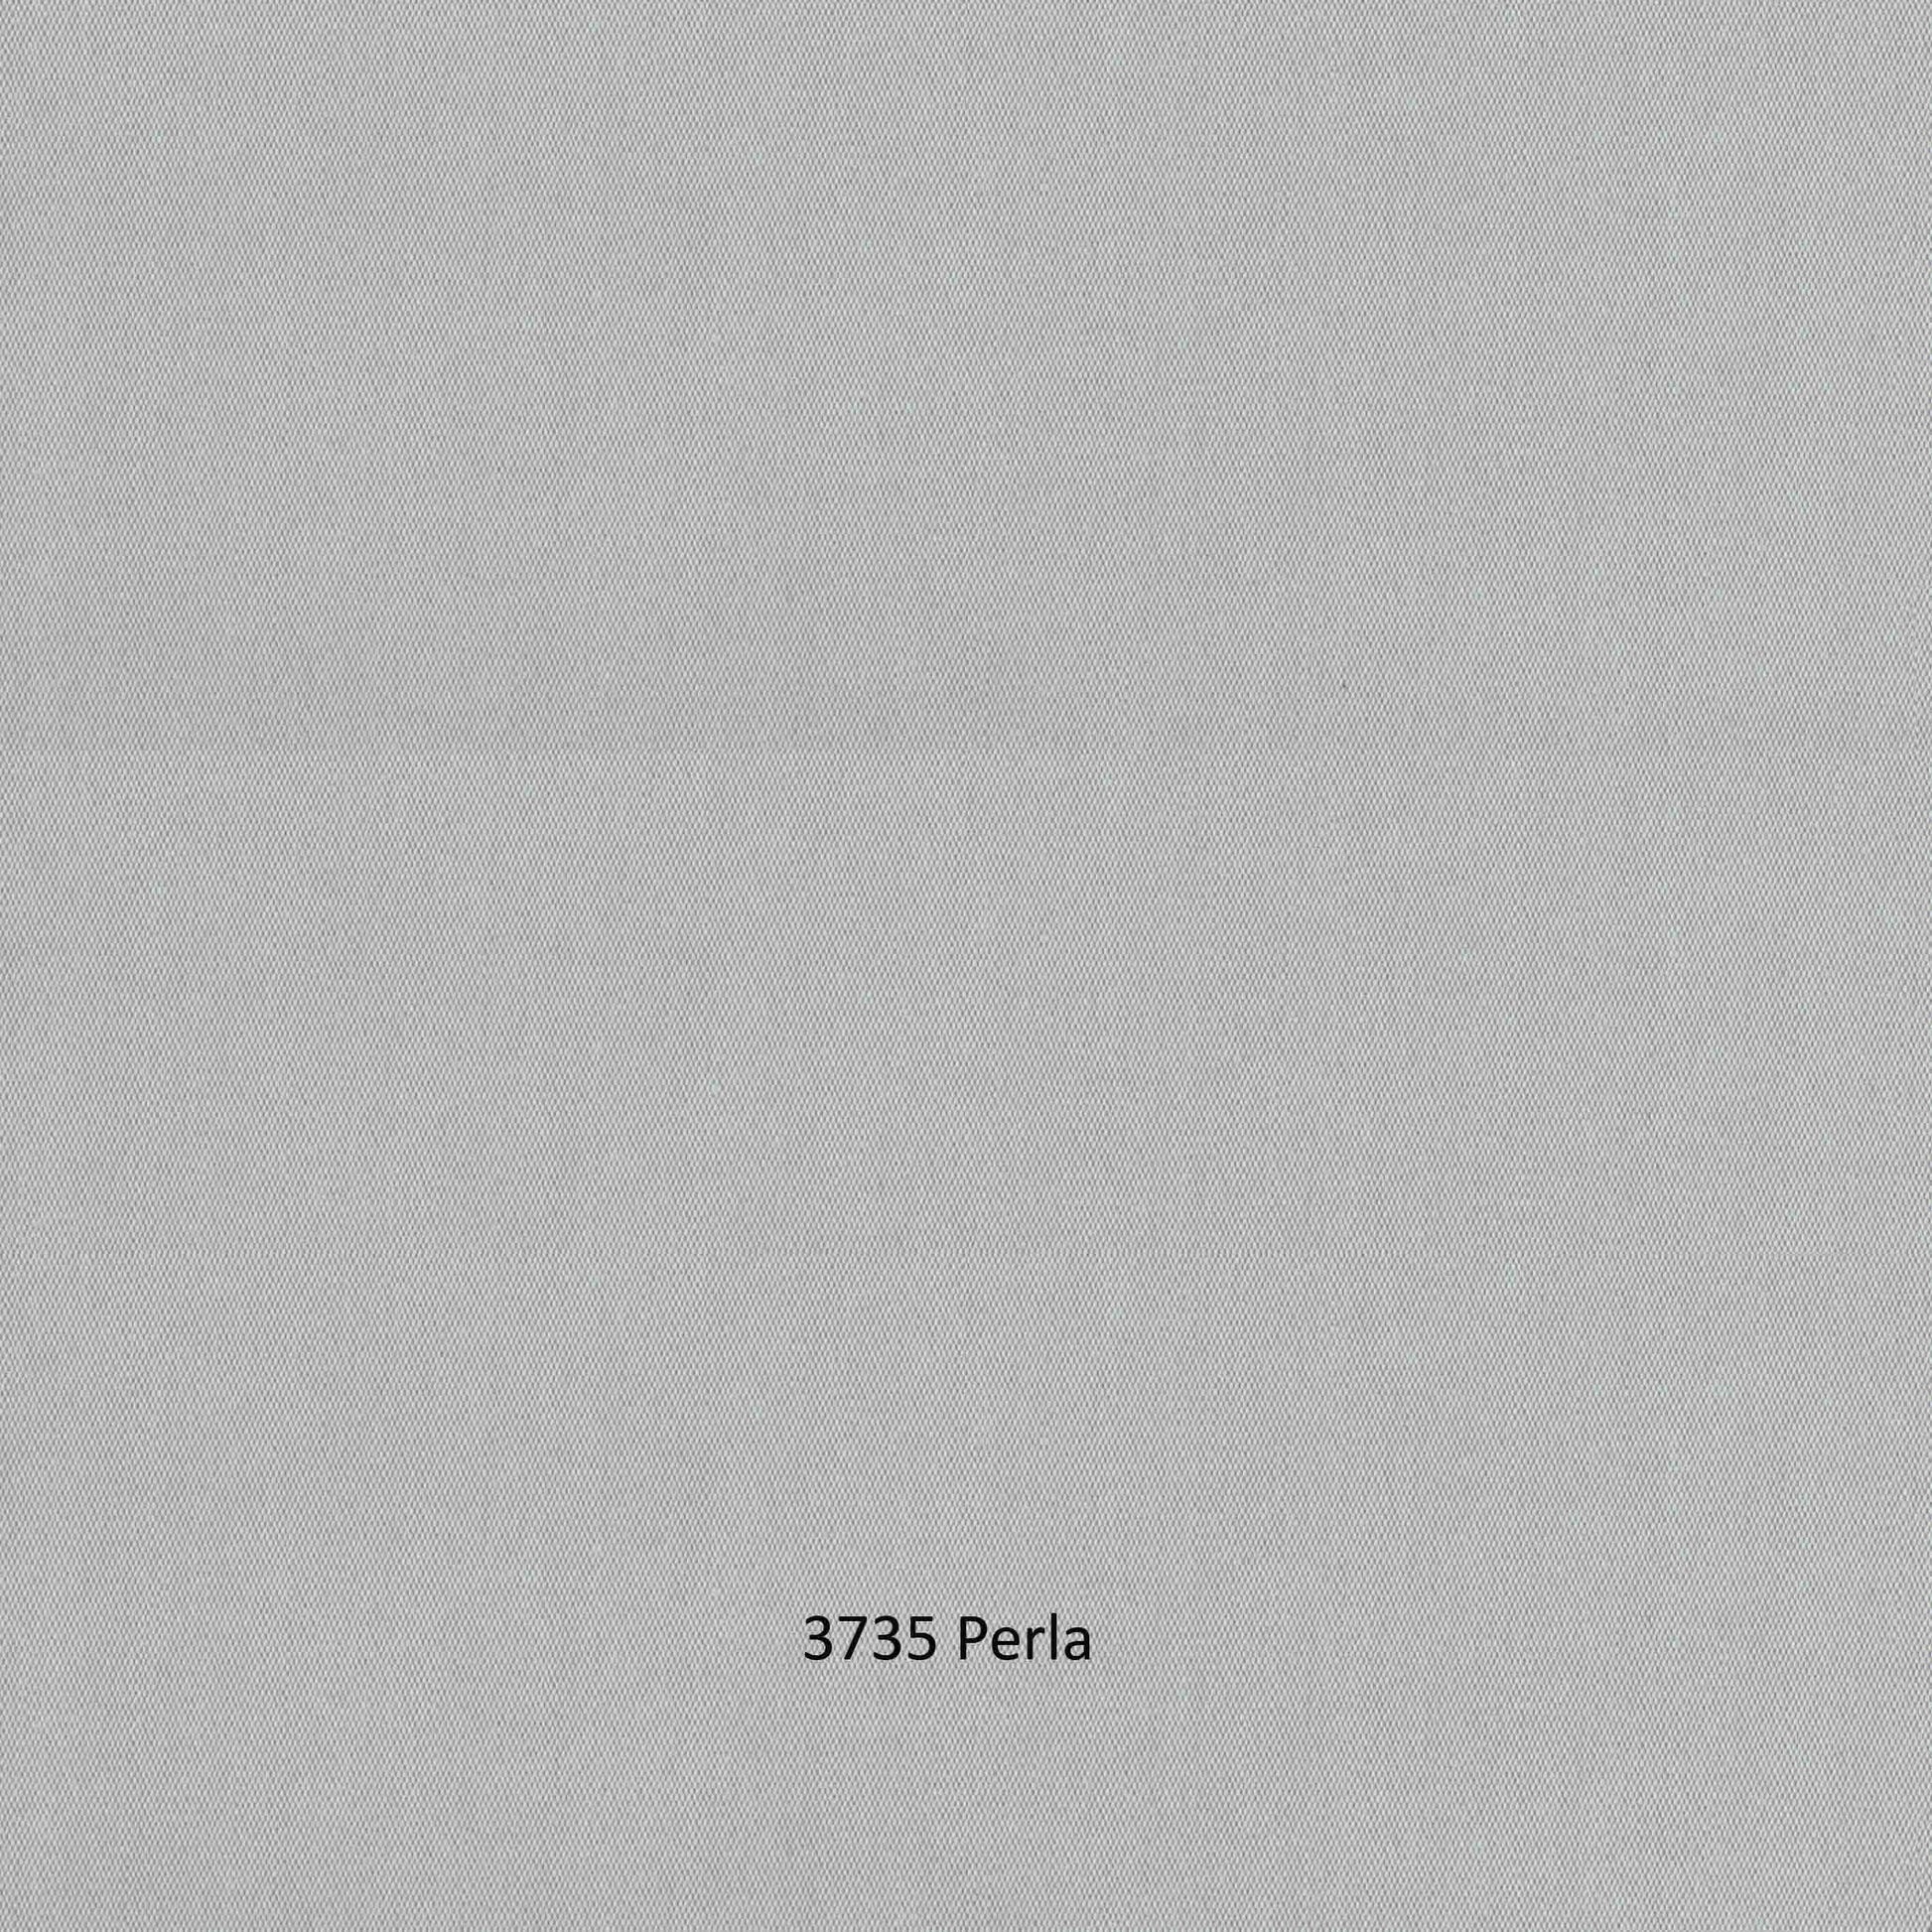 Milano Sofa - PadioLiving - Milano Sofa - Outdoor Sofa - Dark Grey 21mm Strap - Perla (£2398) - PadioLiving